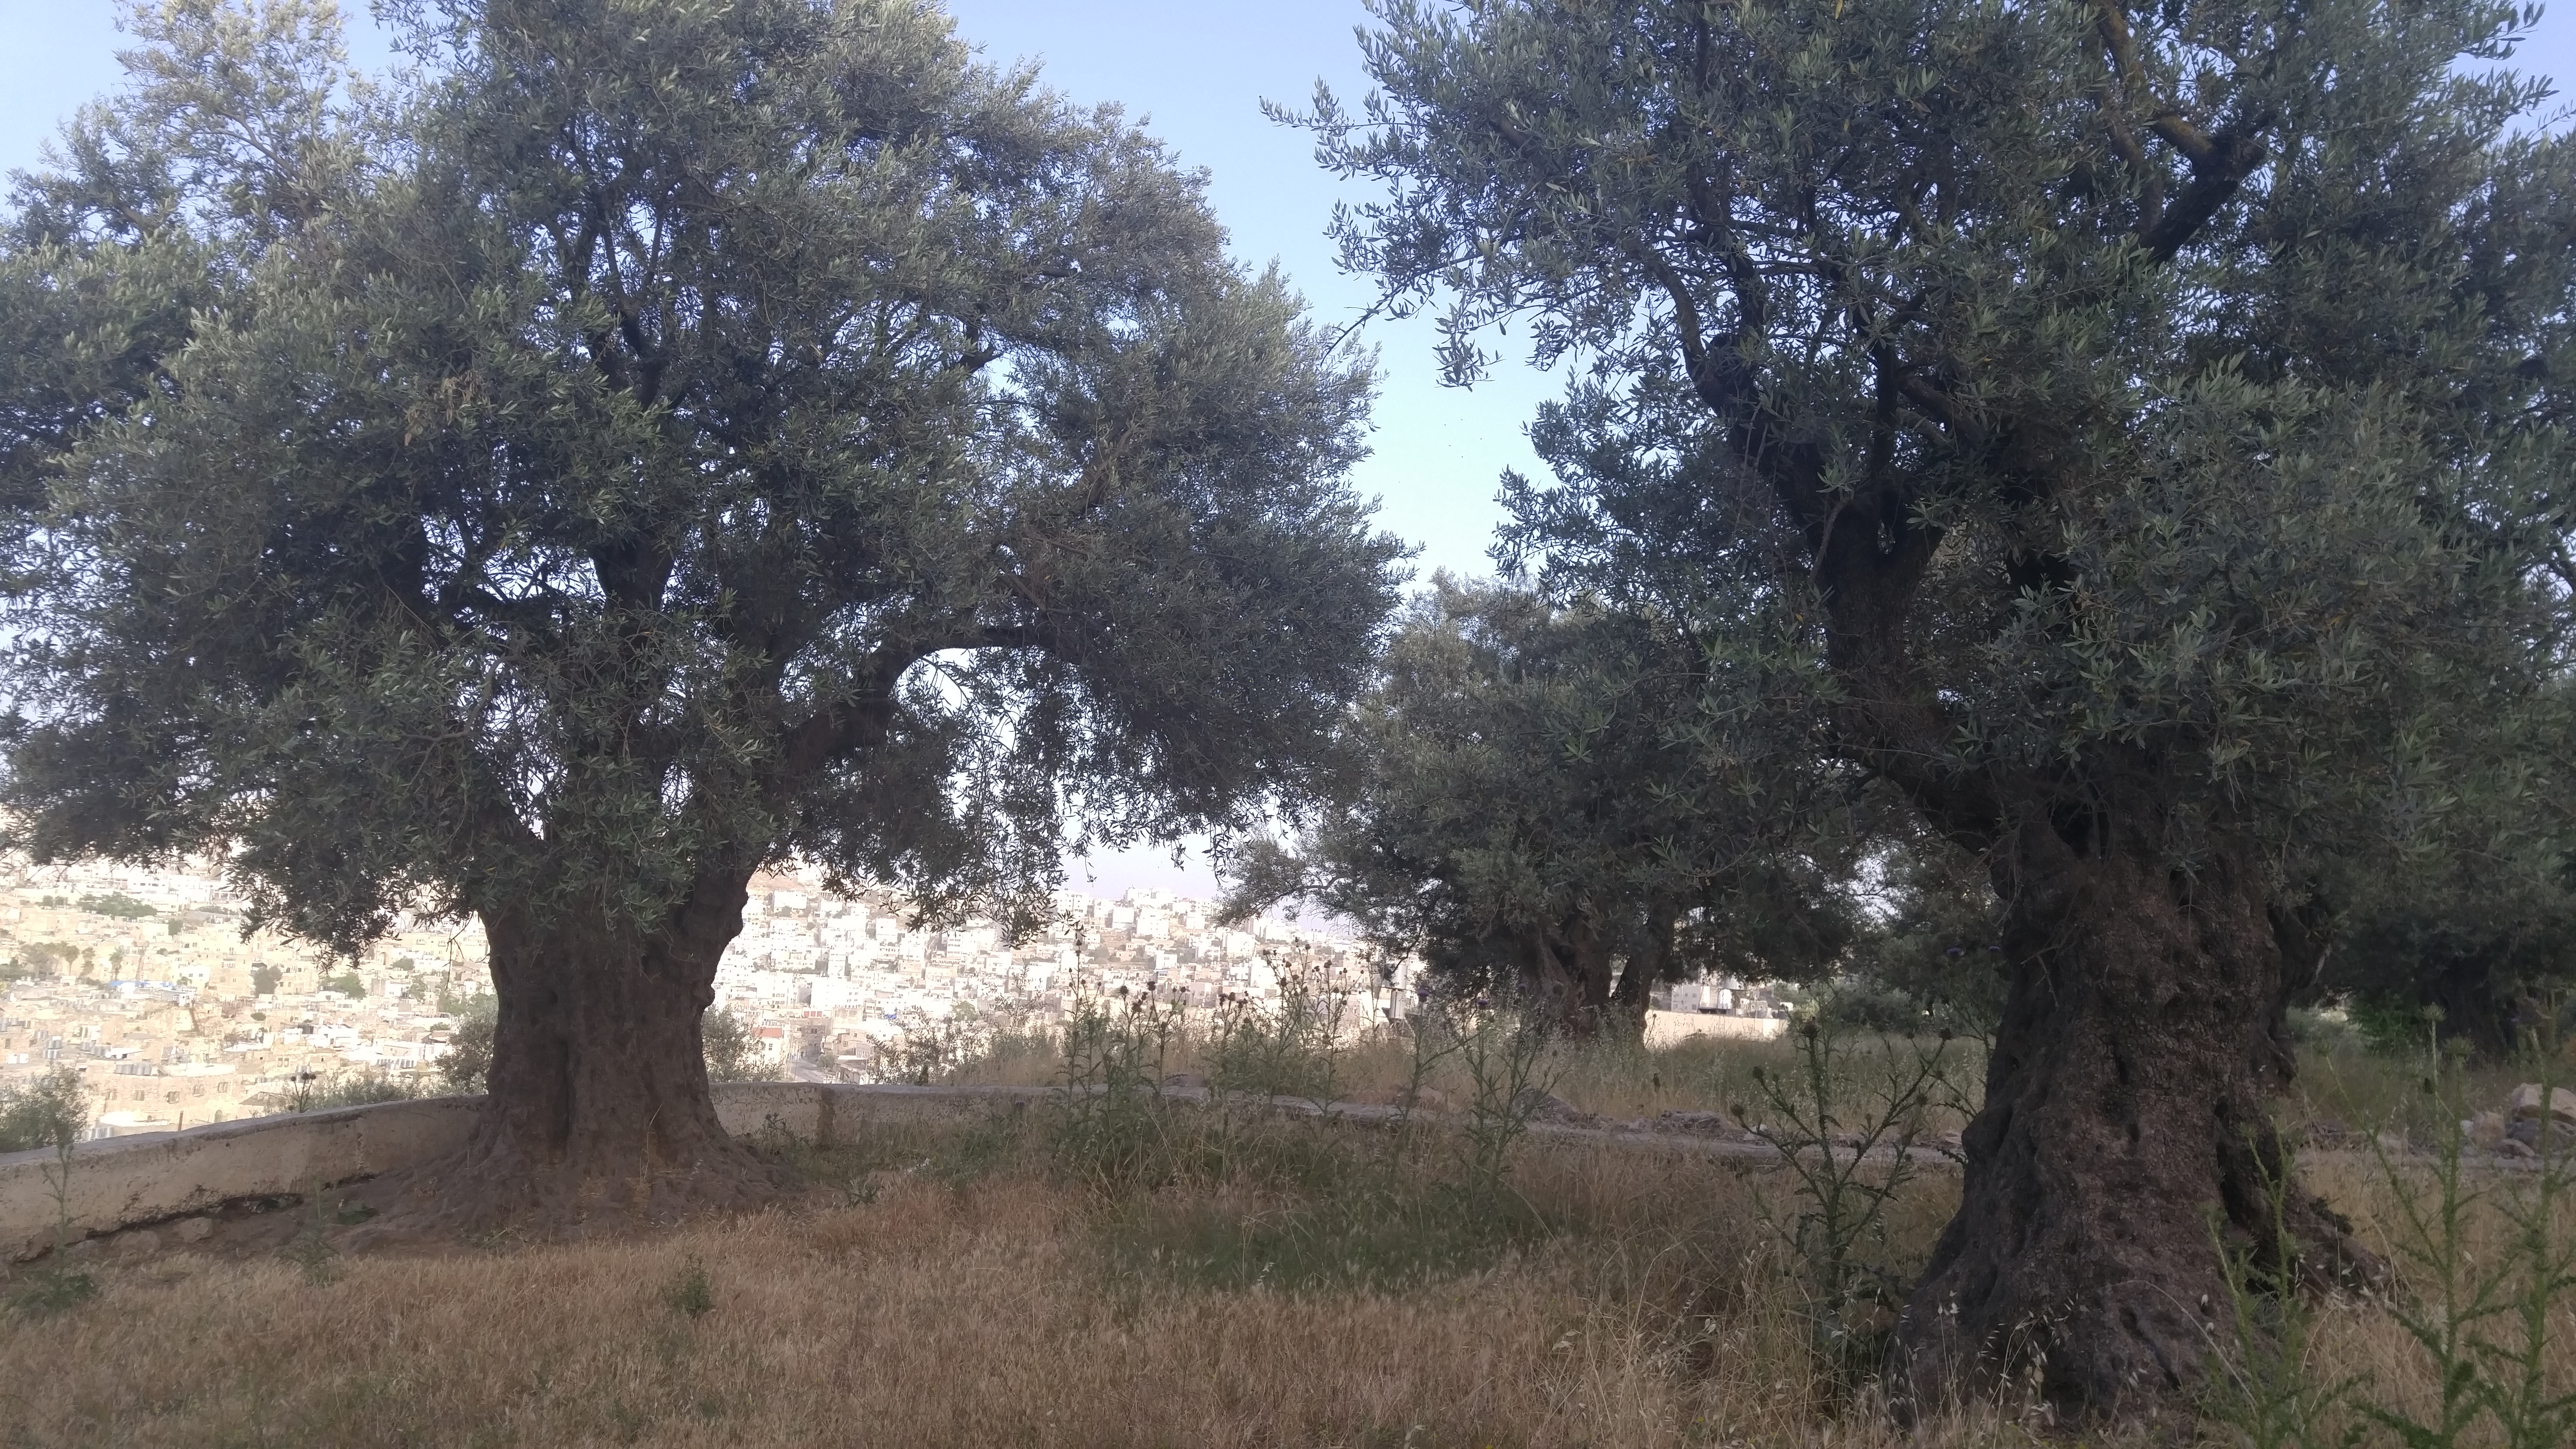 5. Olive trees